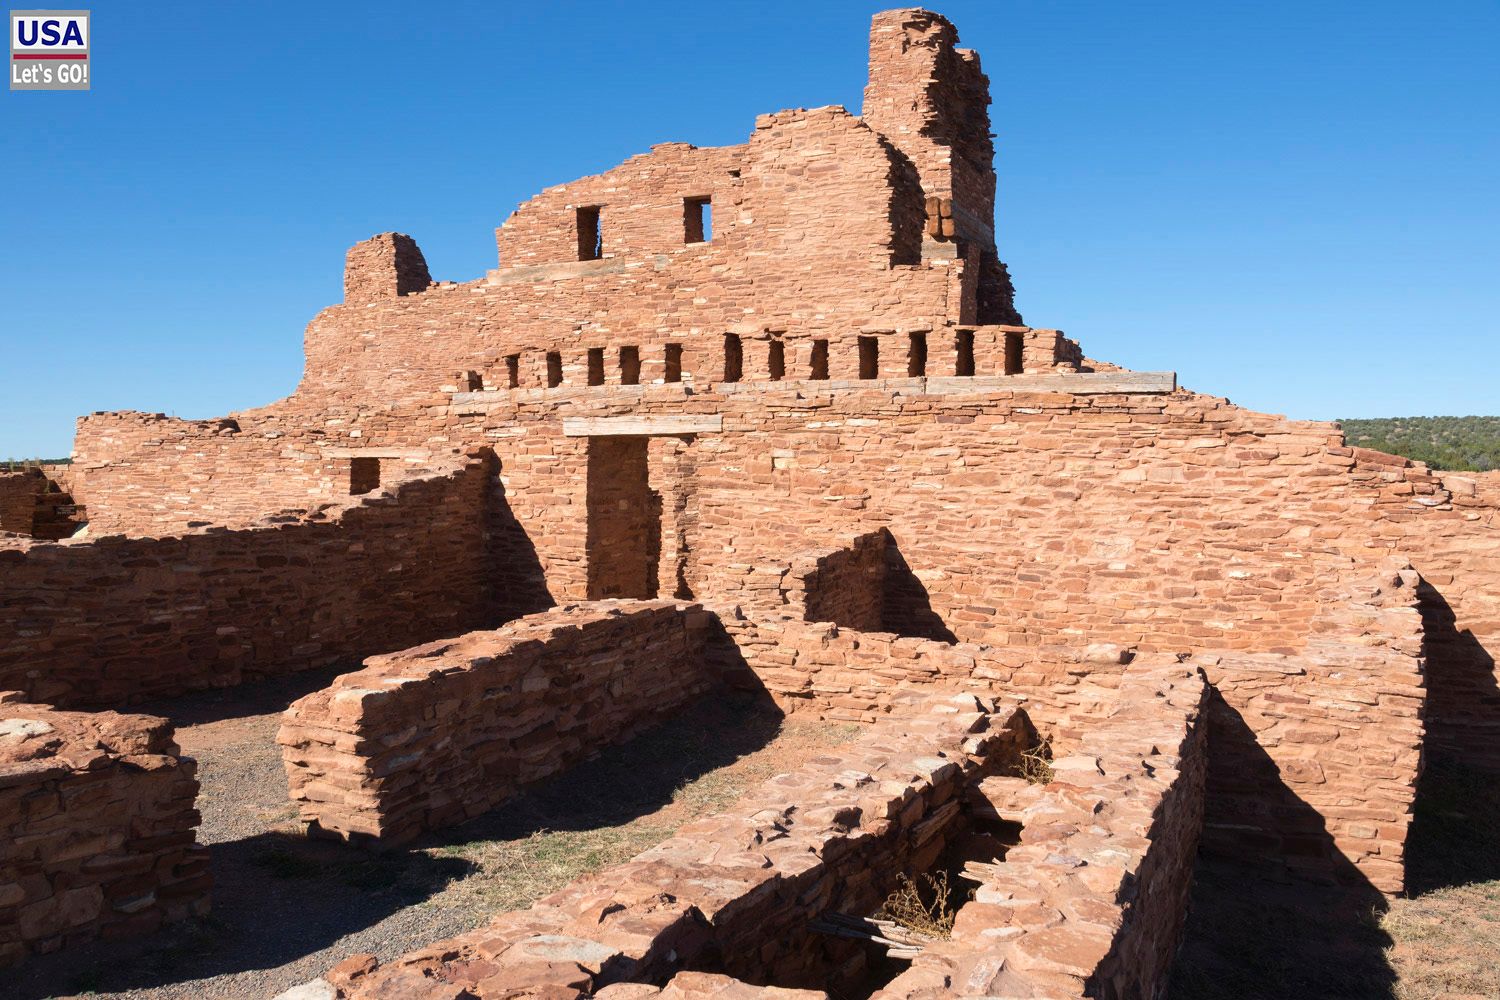 Abo Ruins Salinas Pueblo Missions